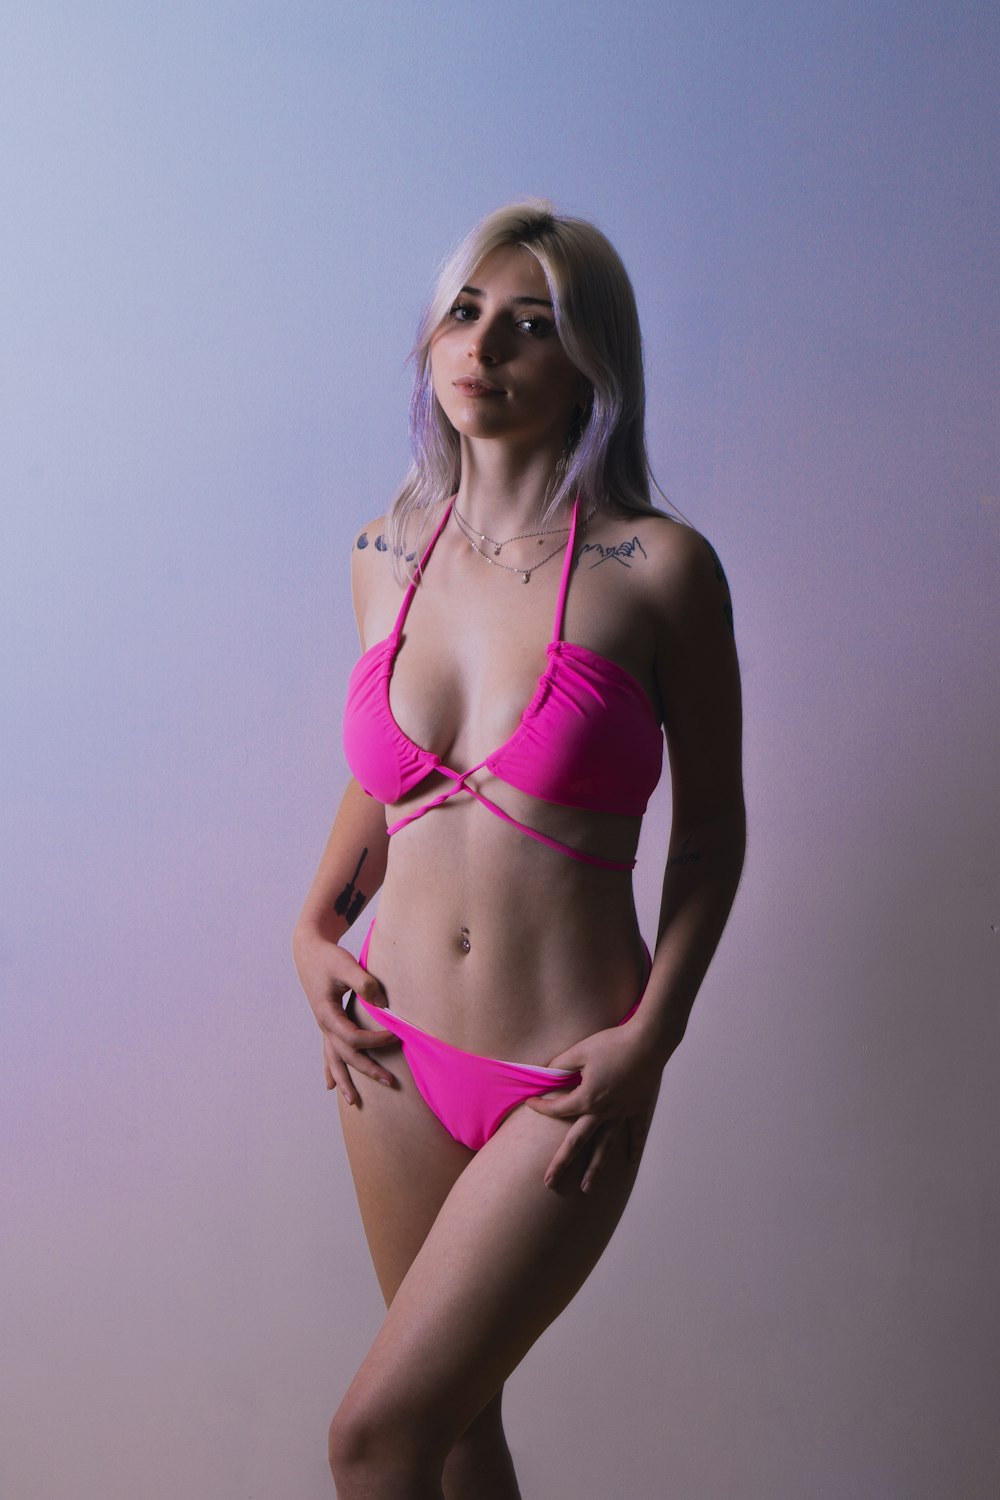 Más de fotos chicas en bikini | Descargar imágenes Unsplash